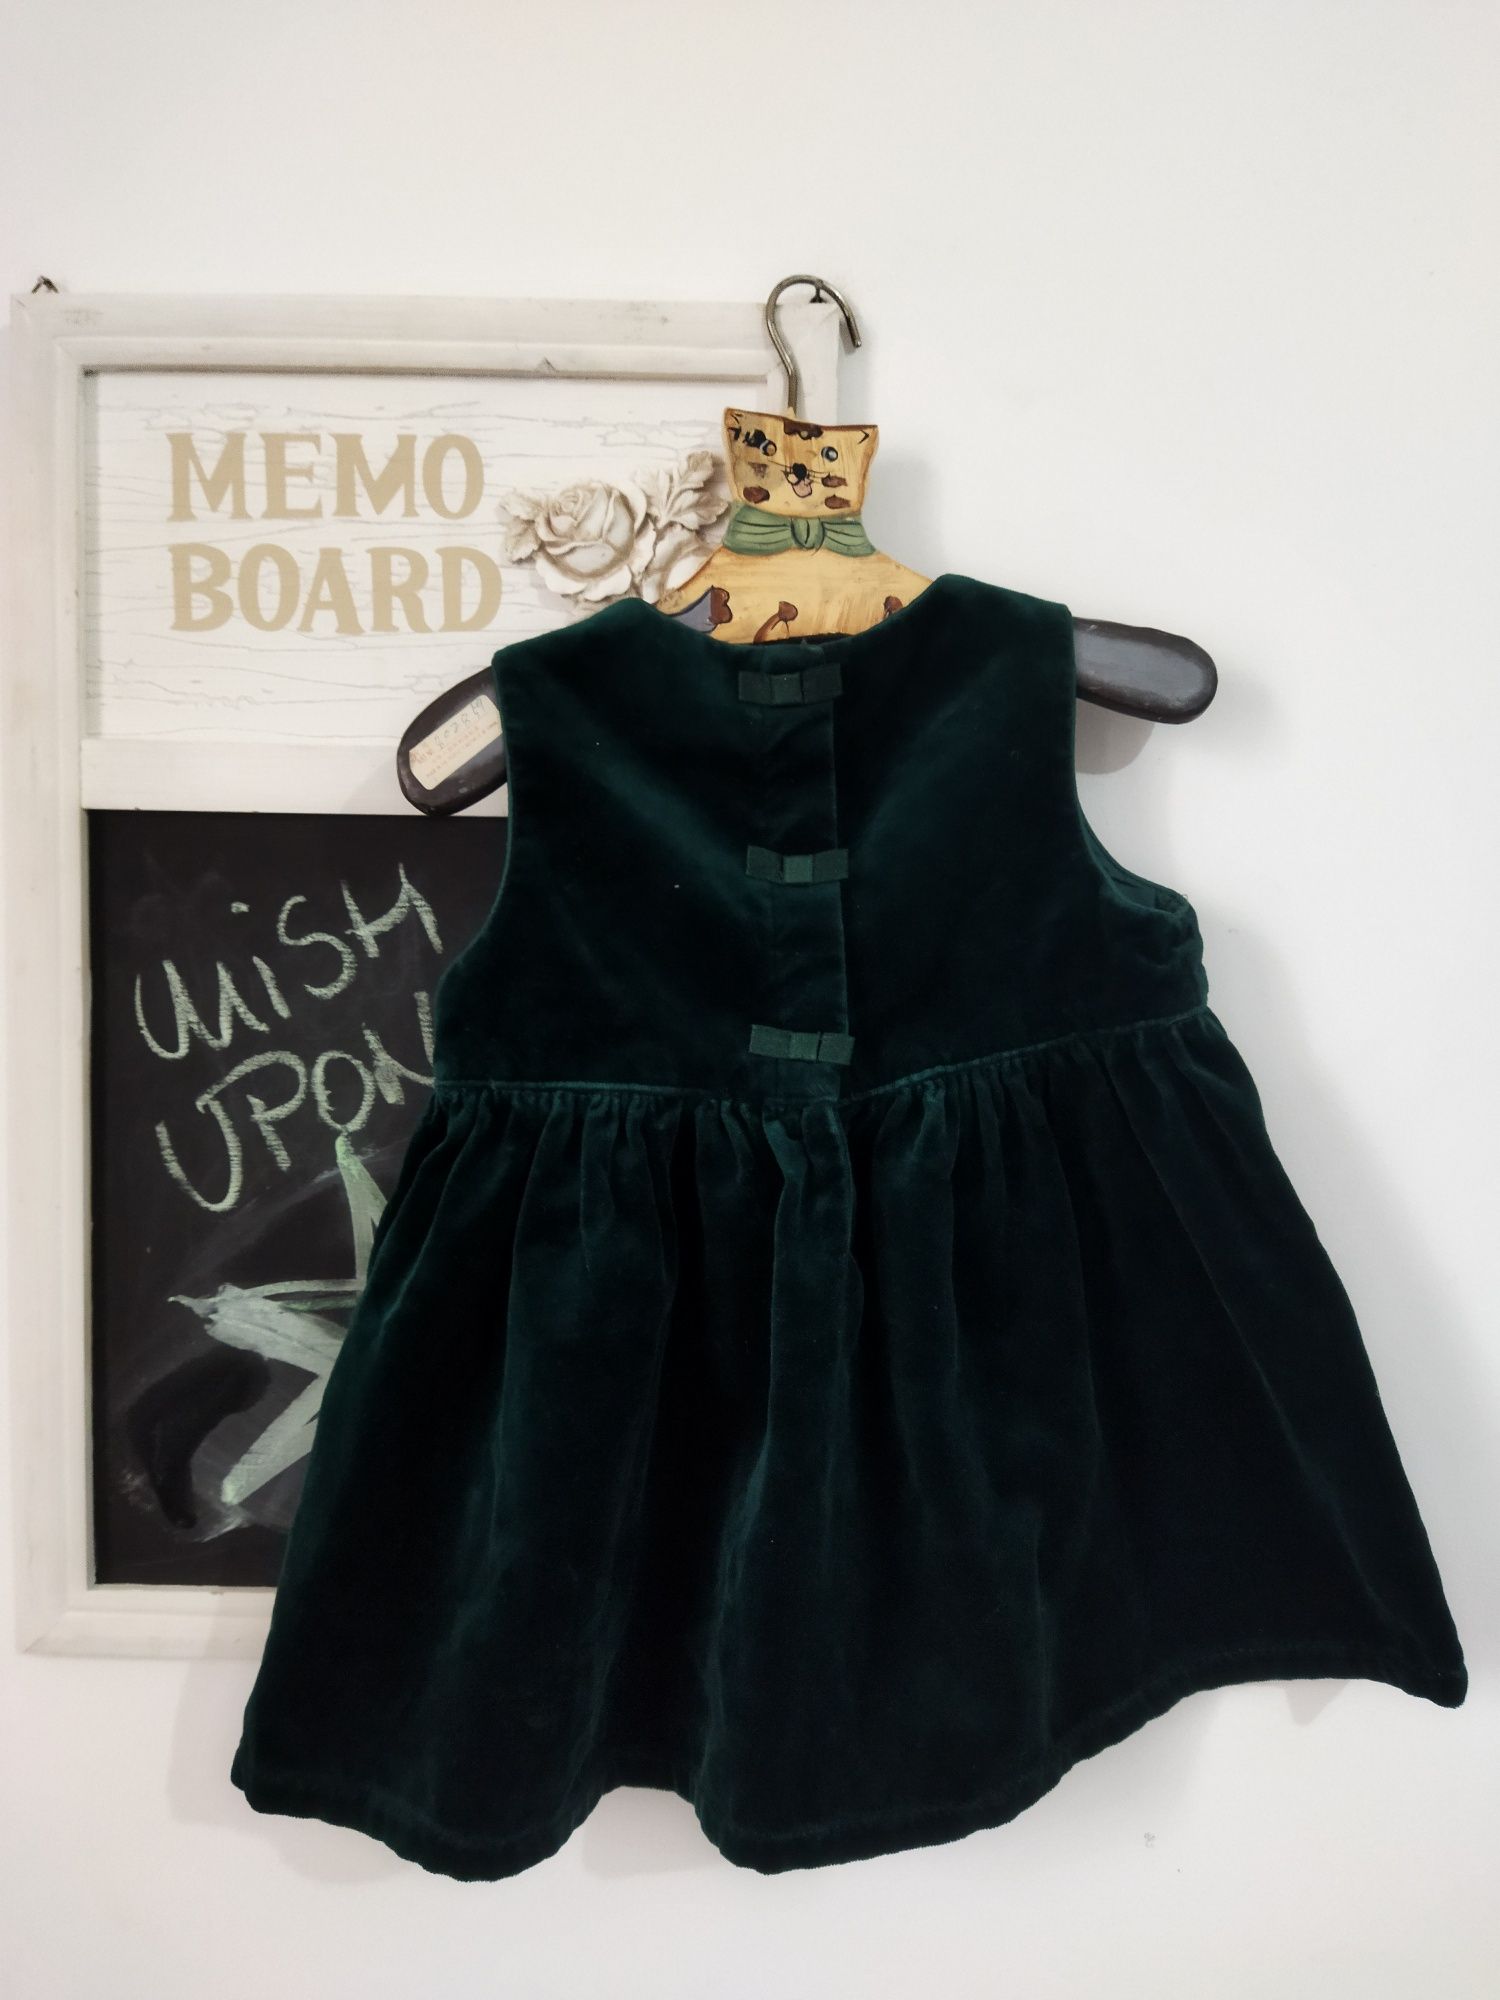 Rochiță verde din catifea firma Gap fetițe 6-12 luni mărimea 74/80